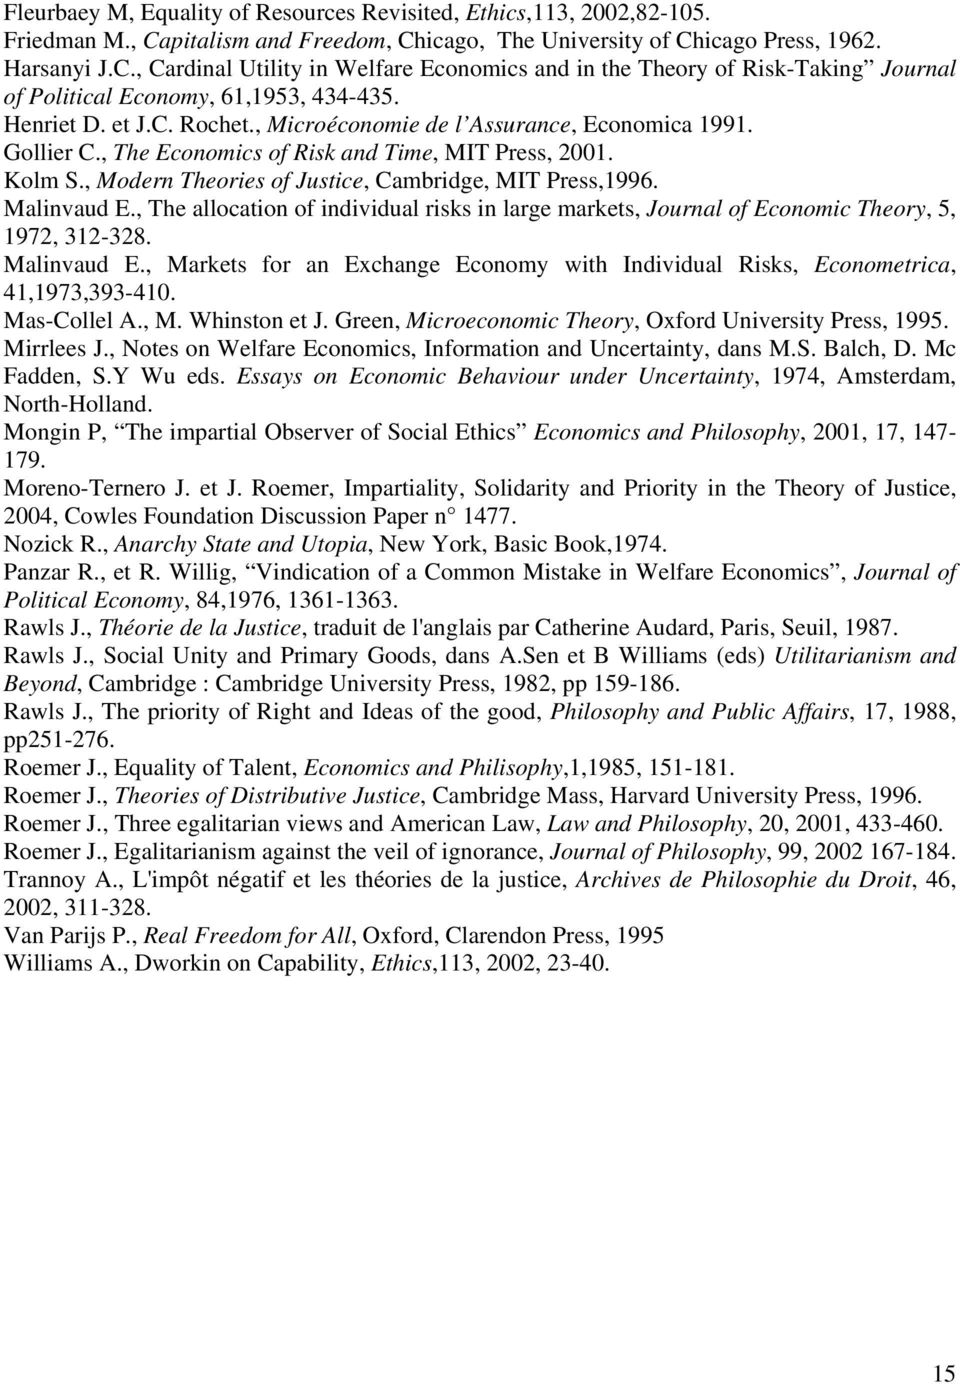 Henriet D. et J.C. Rochet., Microéconomie de l Assurance, Economica 1991. Gollier C., The Economics of Risk and Time, MIT Press, 2001. Kolm S., Modern Theories of Justice, Cambridge, MIT Press,1996.